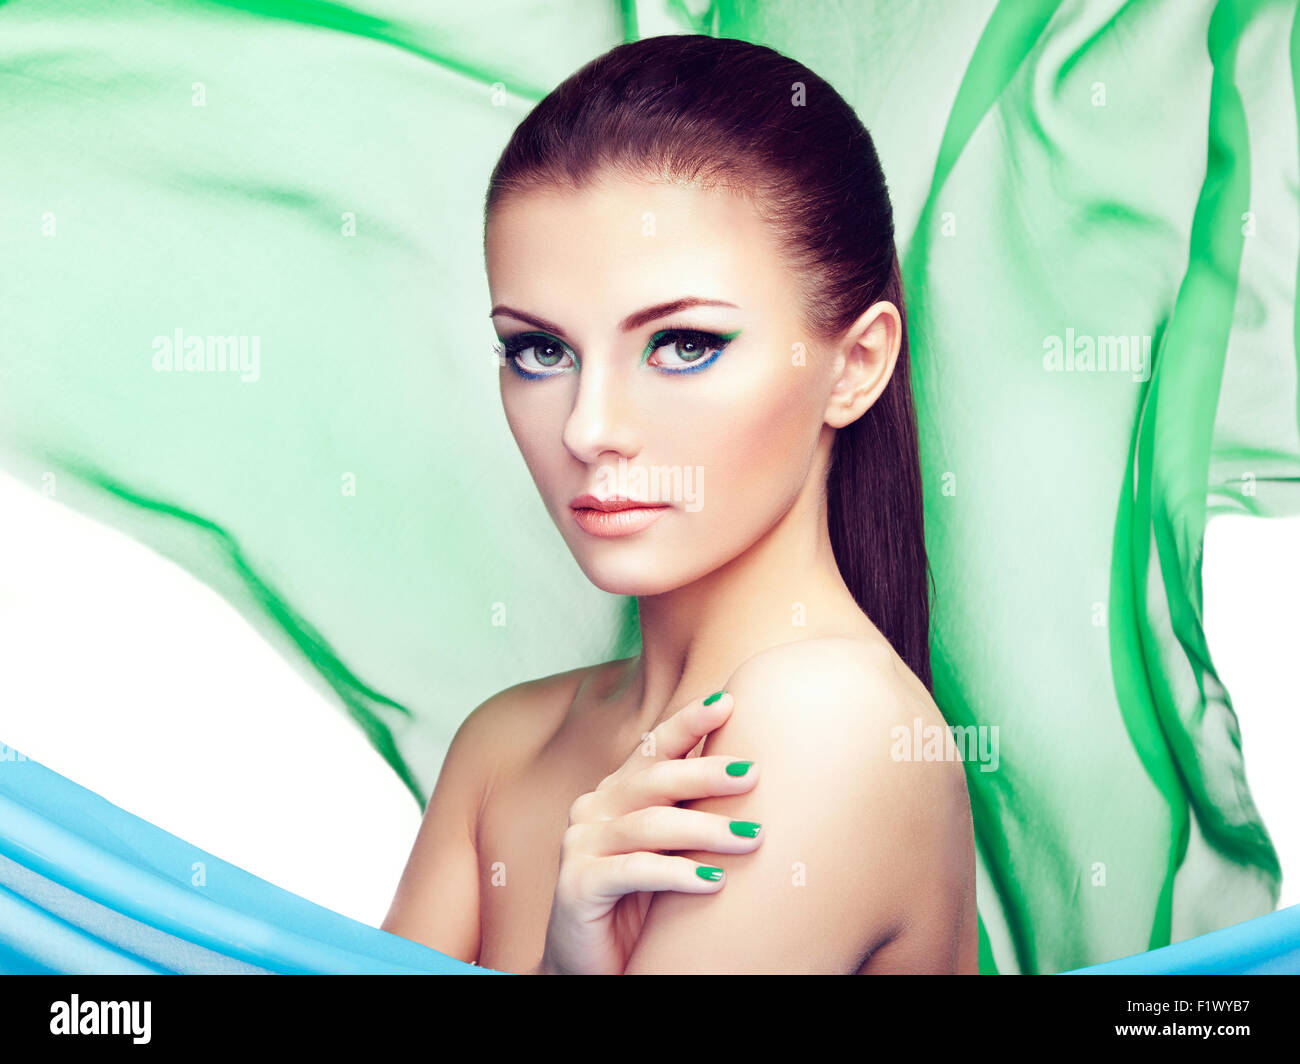 Portrait de jeune femme belle contre les projections de tissu. Beauty woman face closeup. Maquillage professionnel Banque D'Images